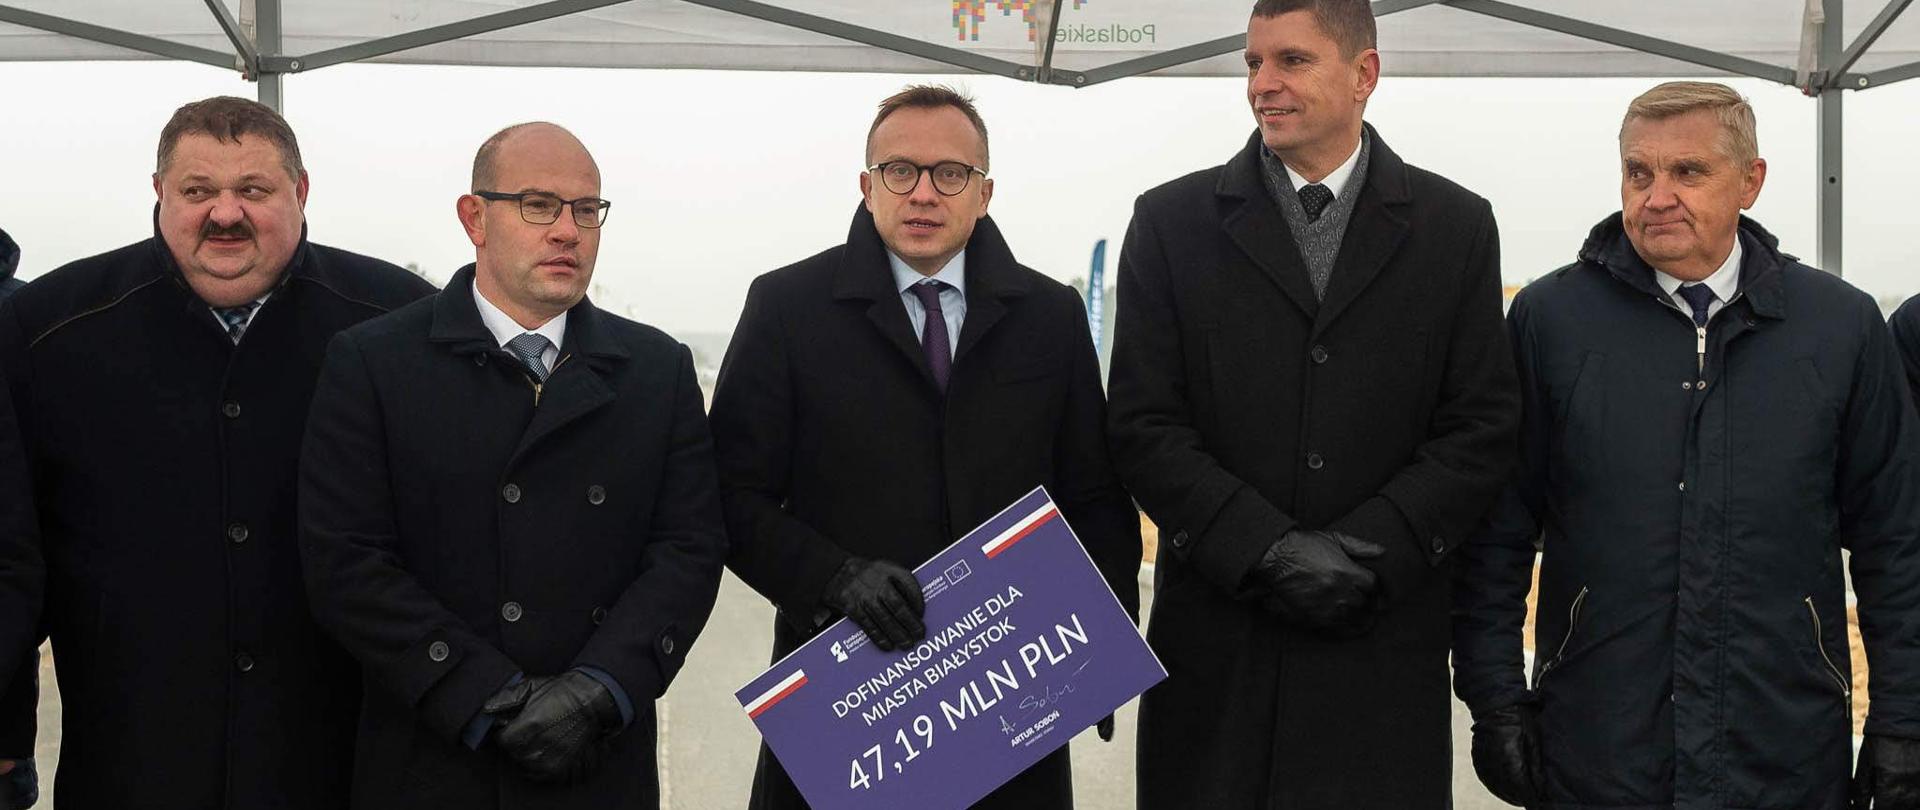 uczestnicy uroczystości stoją, wiceminister Artur Soboń trzyma czek z napisem 47,19 mln zł